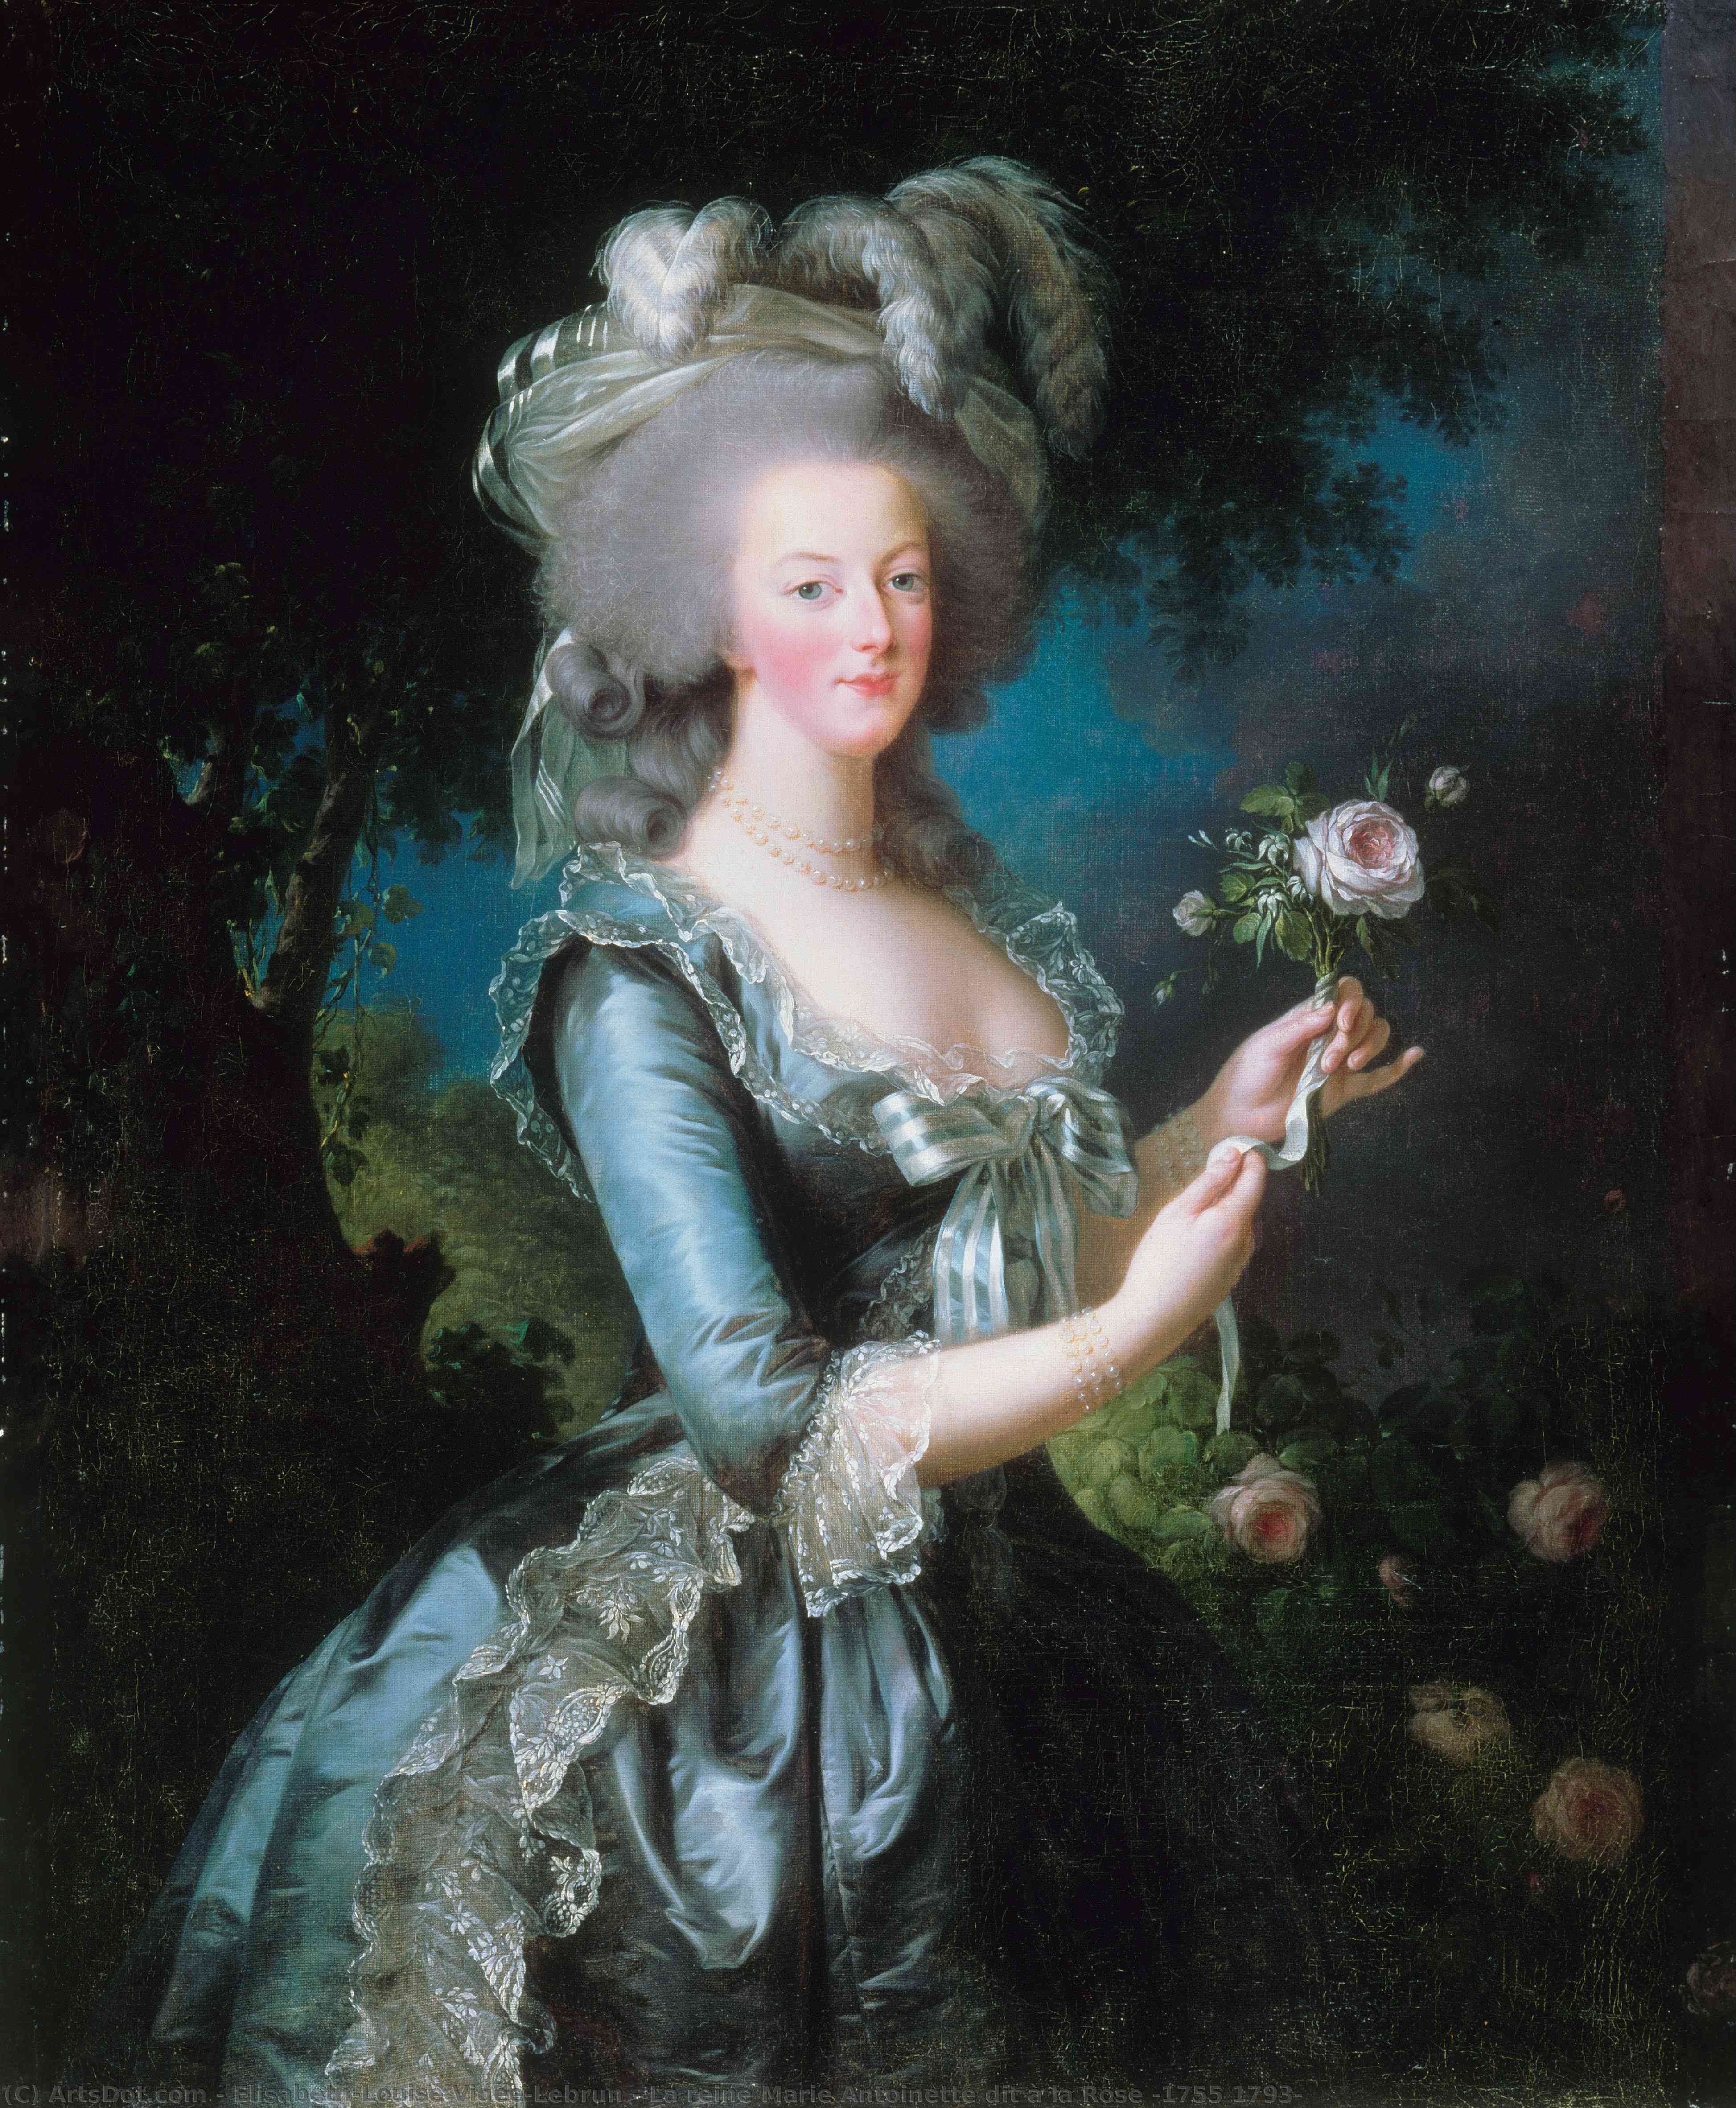 WikiOO.org - Enciclopédia das Belas Artes - Pintura, Arte por Elisabeth-Louise Vigée-Lebrun - La reine Marie Antoinette dit à la Rose (1755 1793)